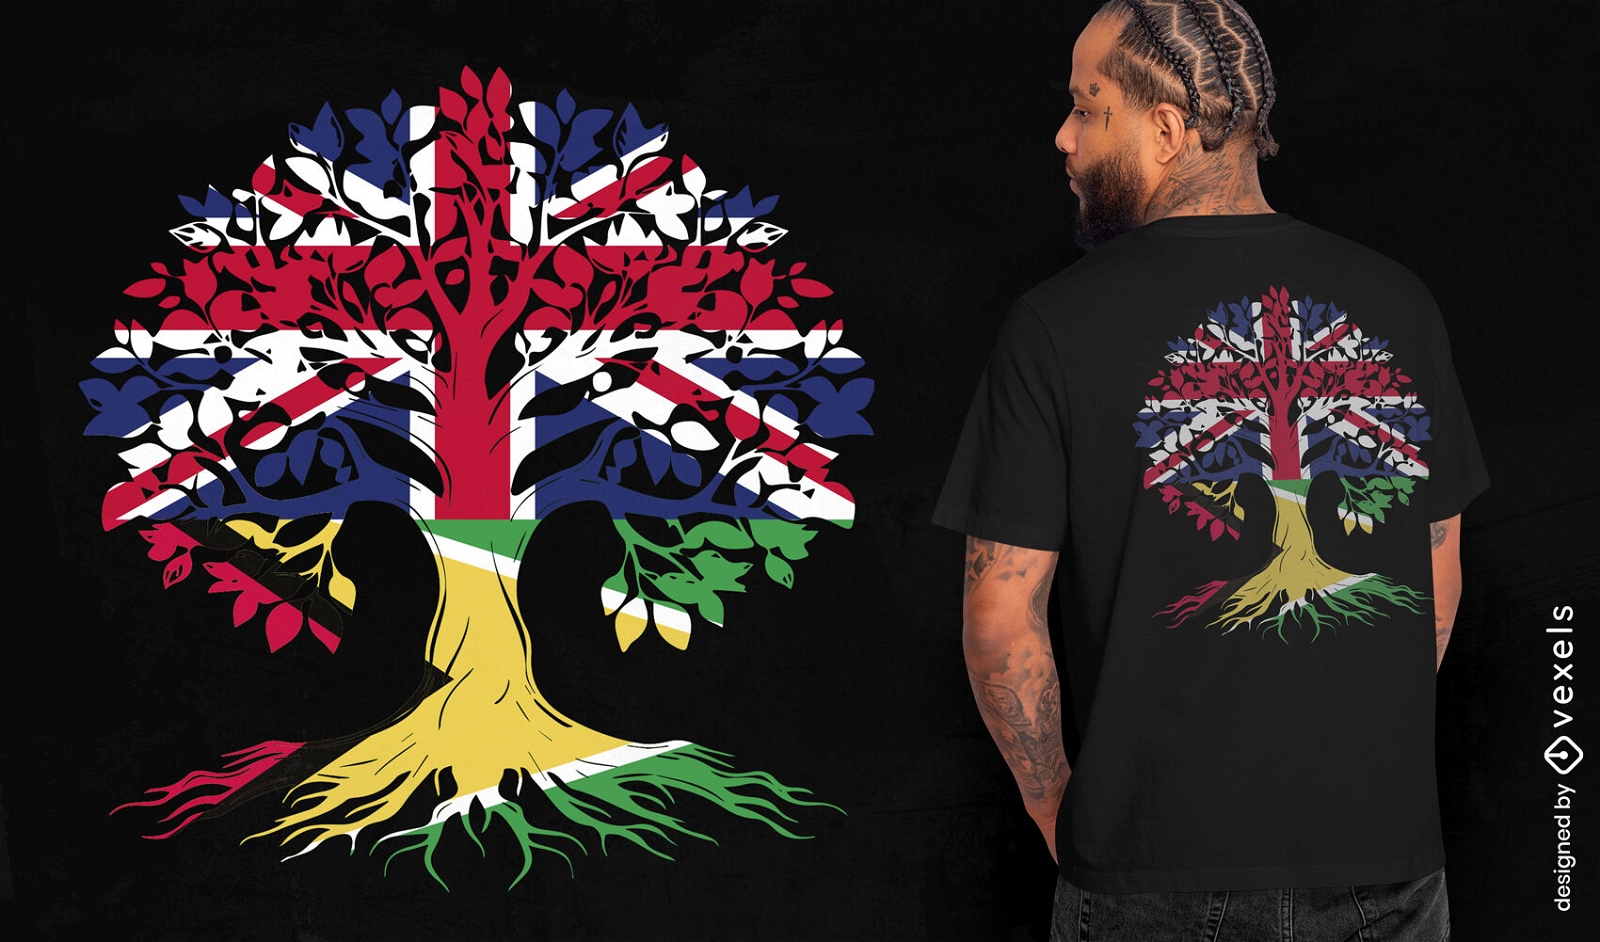 ANFORDERN SIE ein britisches Baum-T-Shirt-Design